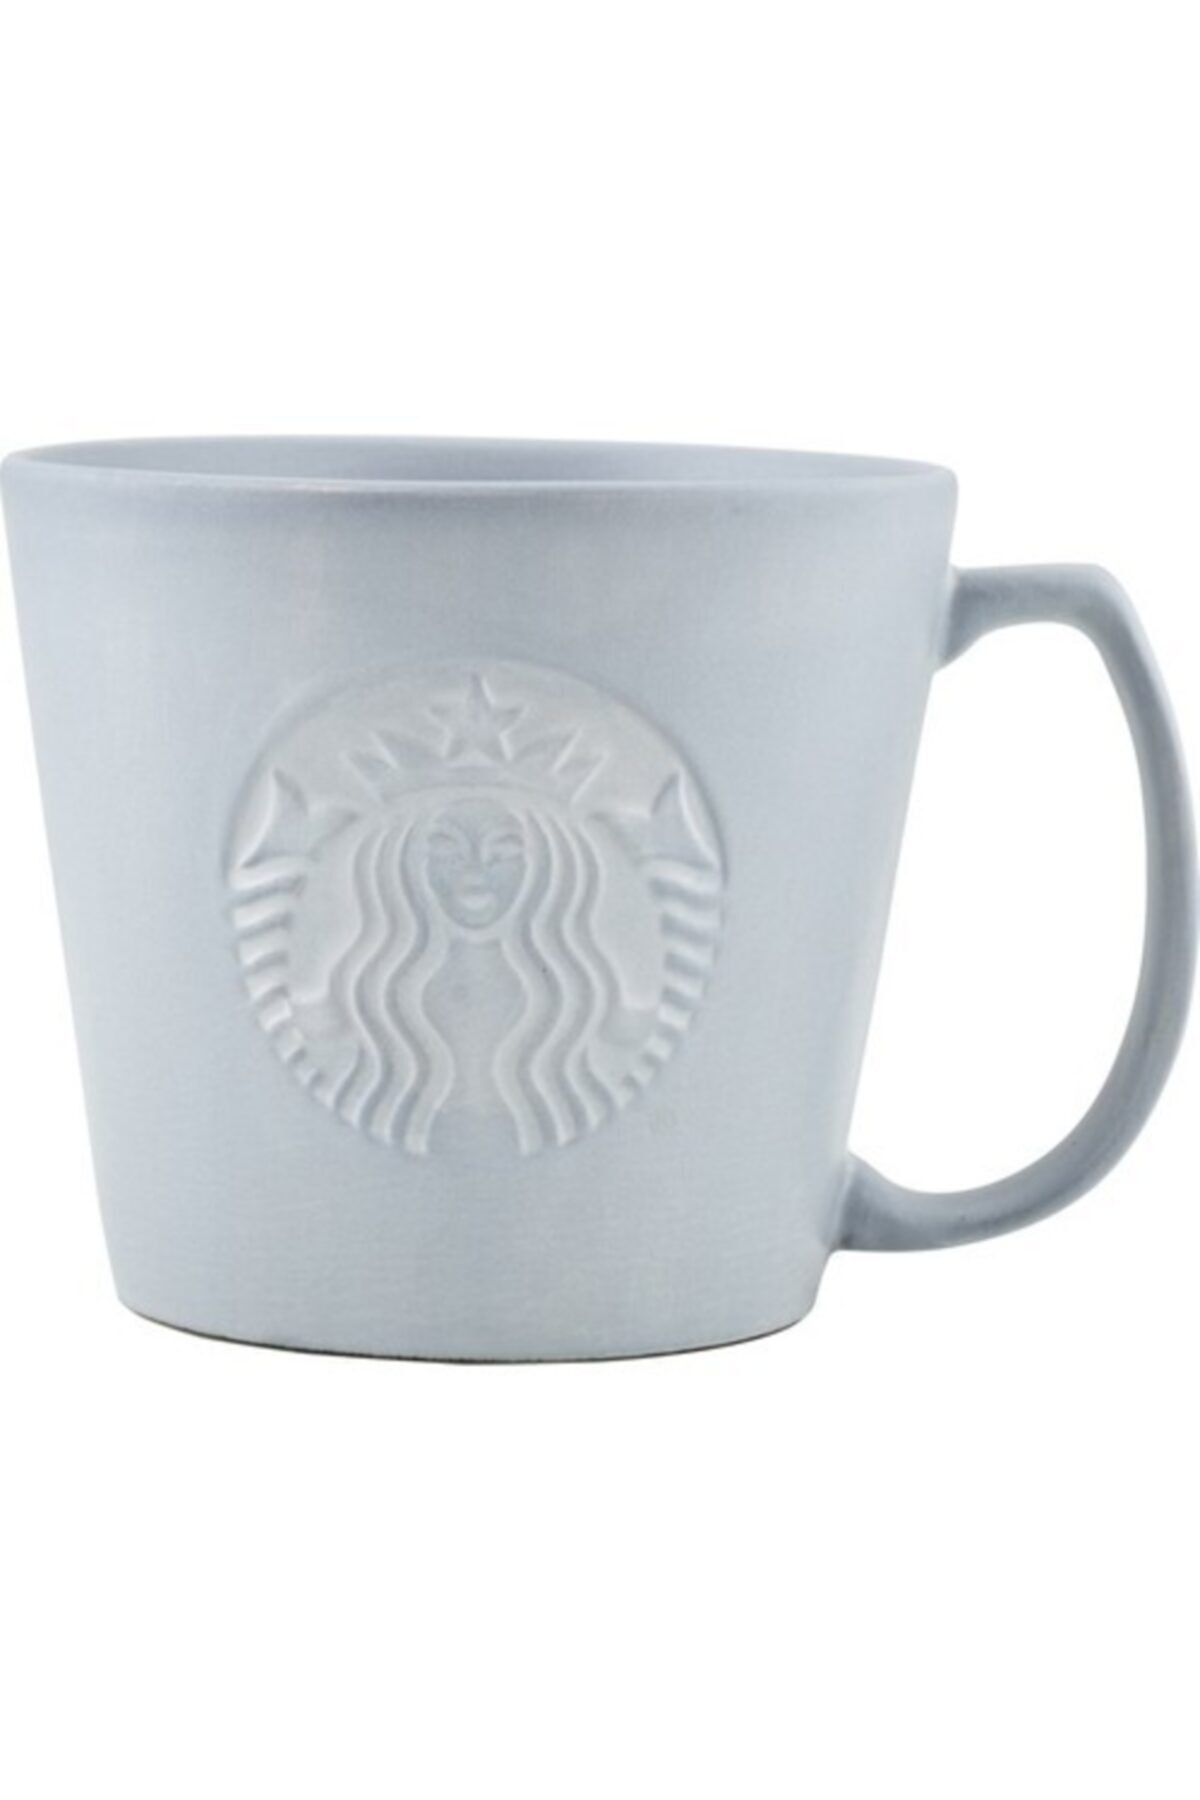 Starbucks 355 ml Çay Ve Kahve Fincanı